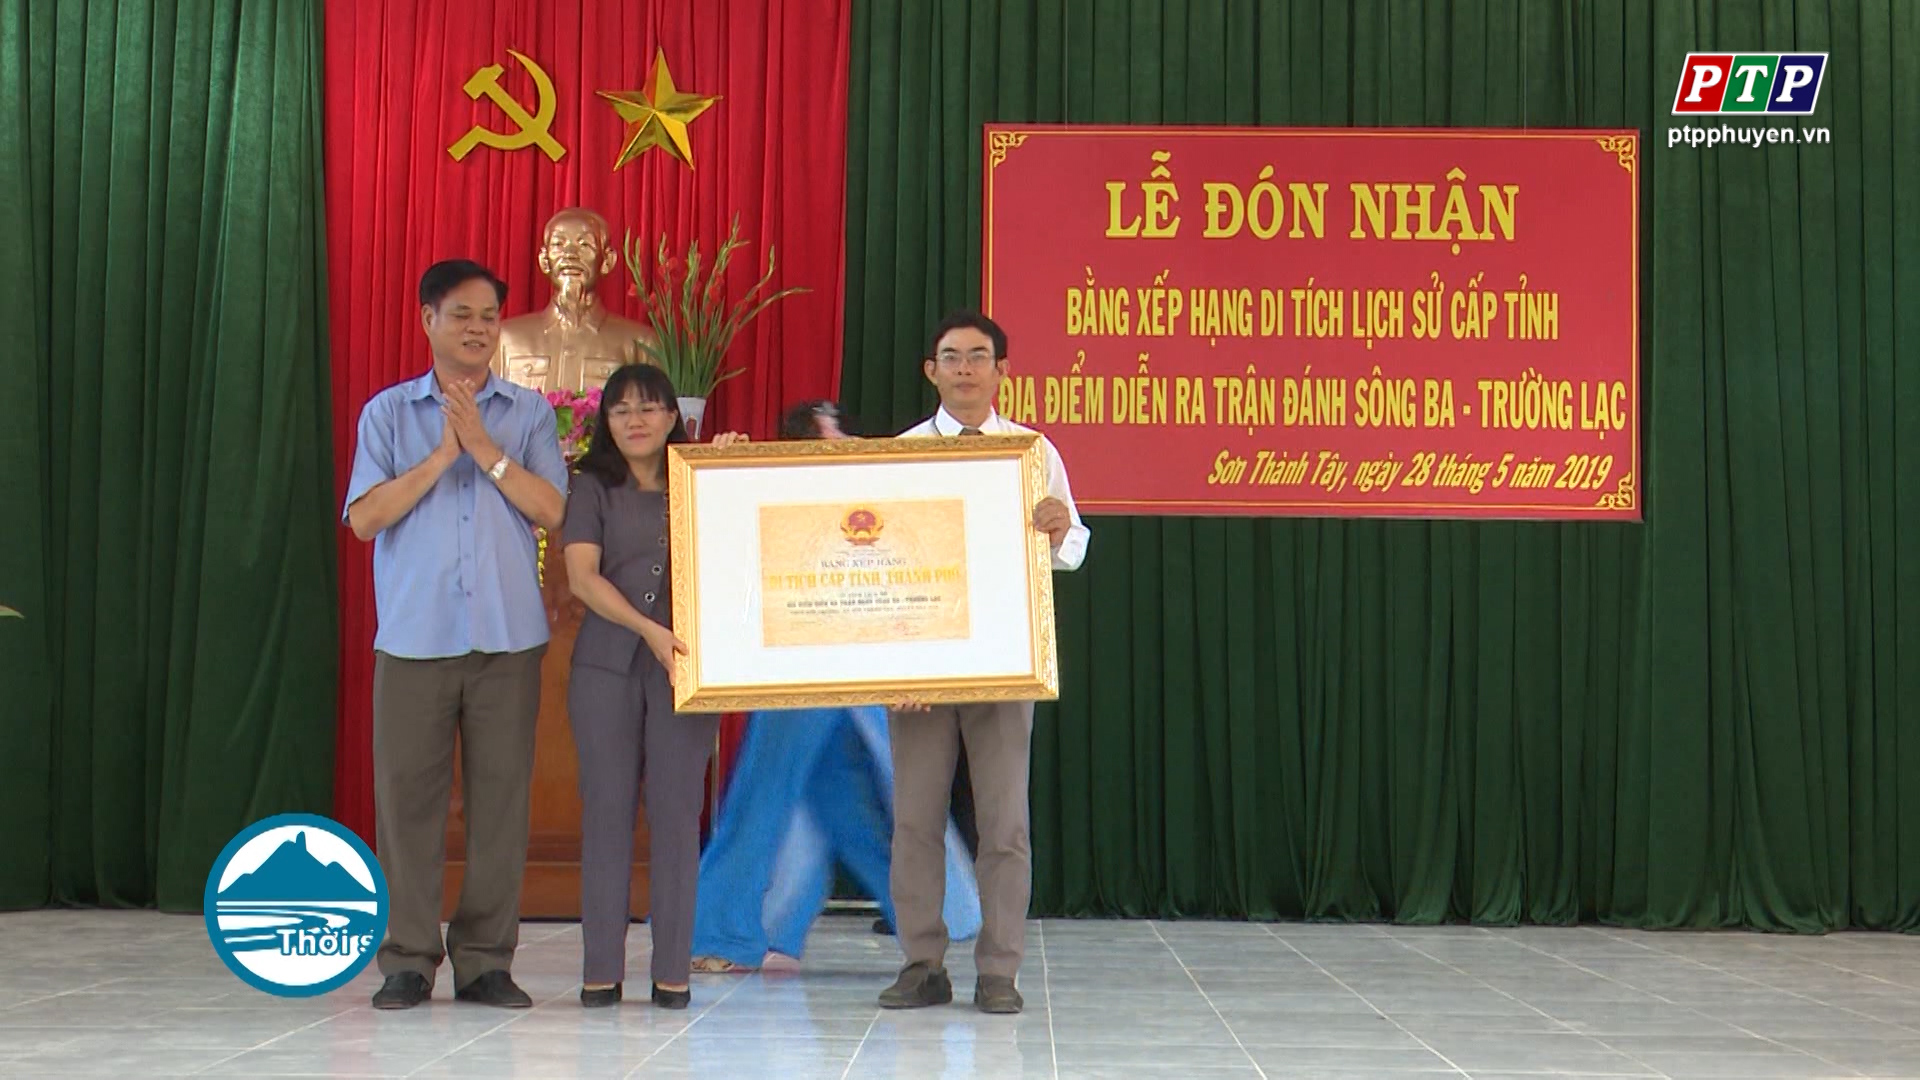 Tây Hòa: Đón nhận Bằng xếp hạng di tích cấp tỉnh đối với Di tích lịch sử Địa điểm diễn ra trận đánh Sông Ba – Trường Lạc